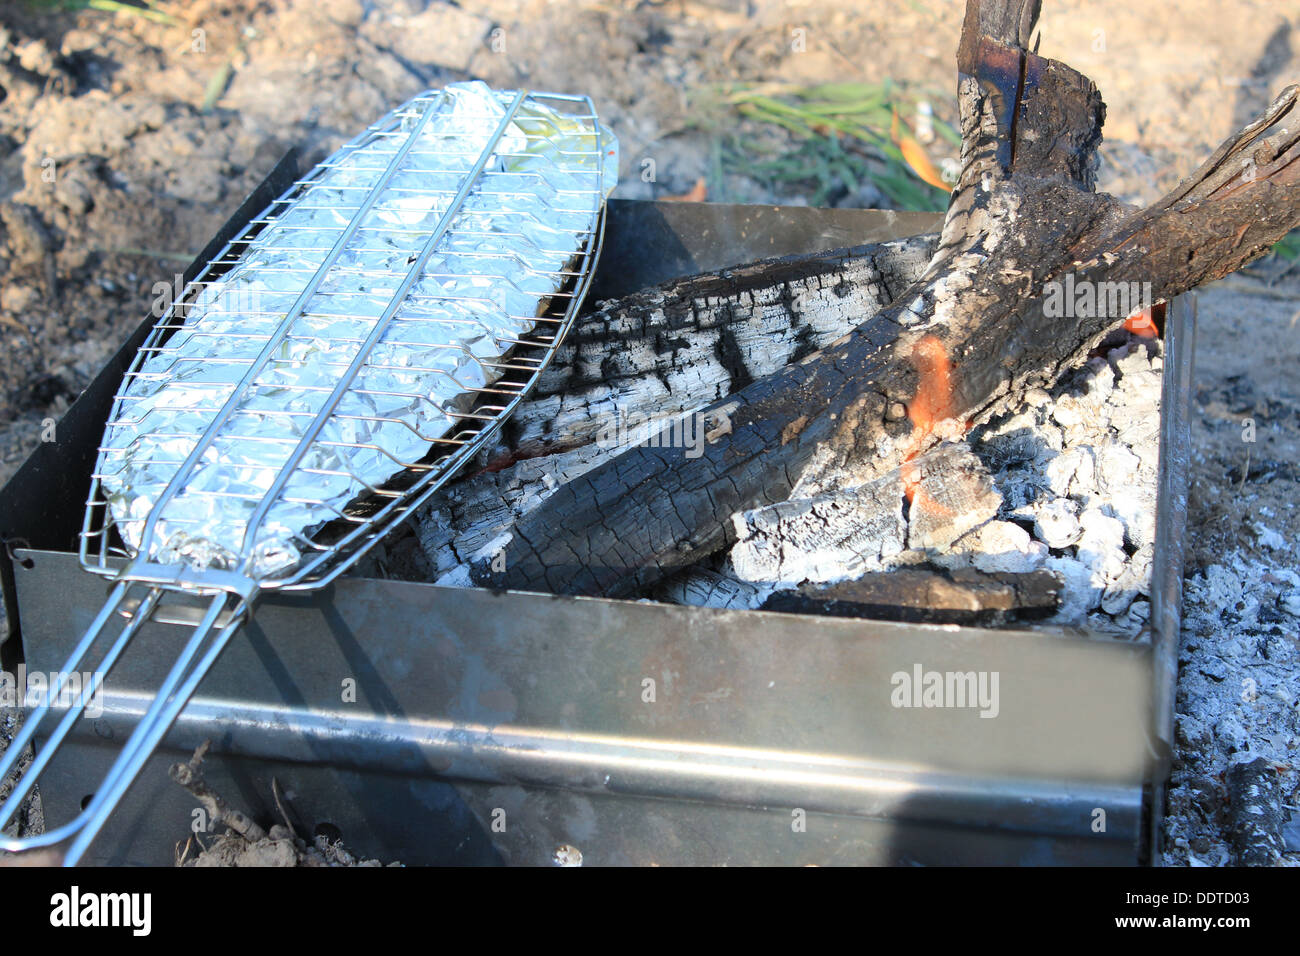 Gericht aus gebratenem Fisch auf Corbons auf Feuer gekocht Stockfoto